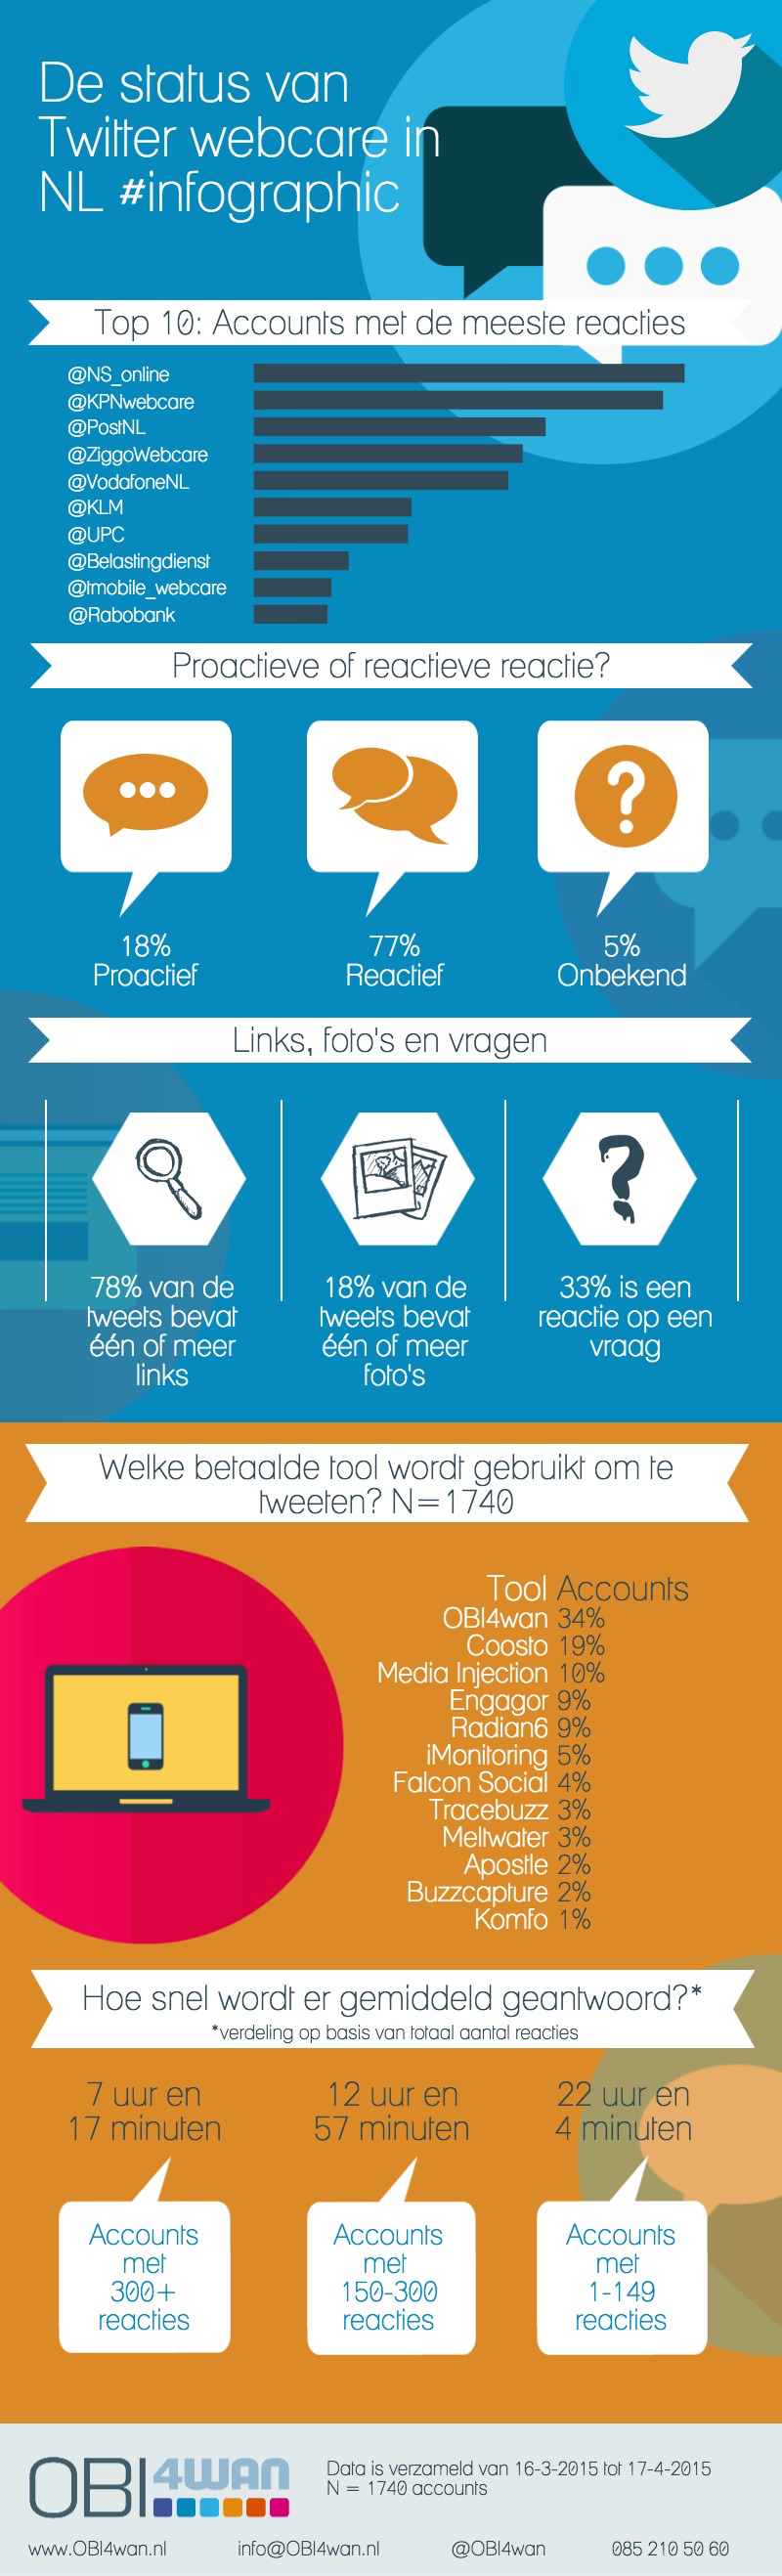 OBI4wan-17042015-De-status-van-Twitter-webcare-in-NL-Infographic